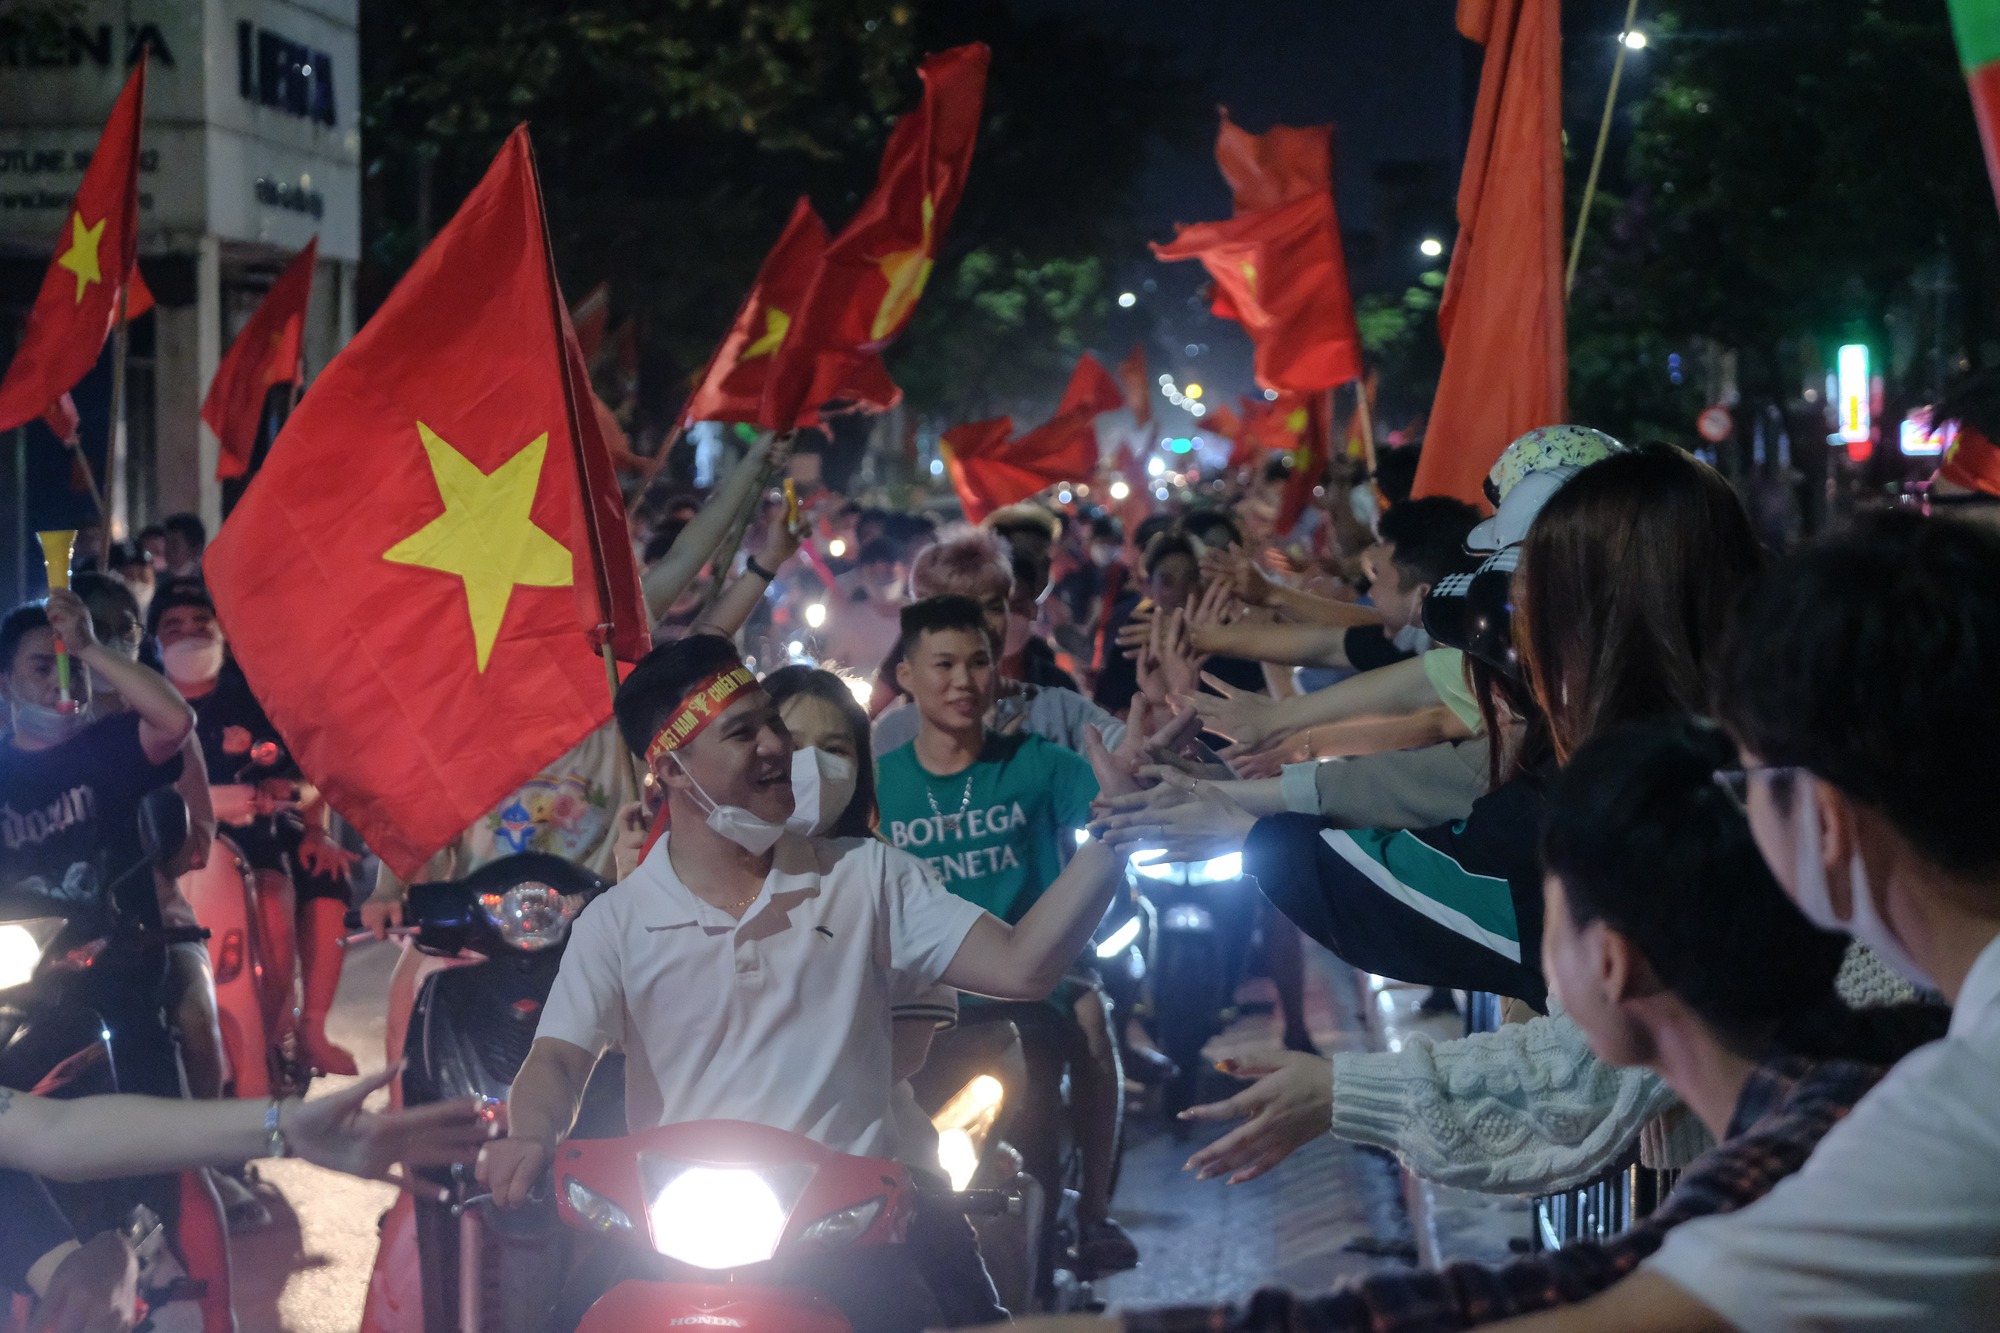 Đêm U23 Việt Nam giành HCV SEA Games trả món nợ với người Thái, người dân cả nước xuống đường nhuộm đỏ mọi tuyến phố - Ảnh 19.